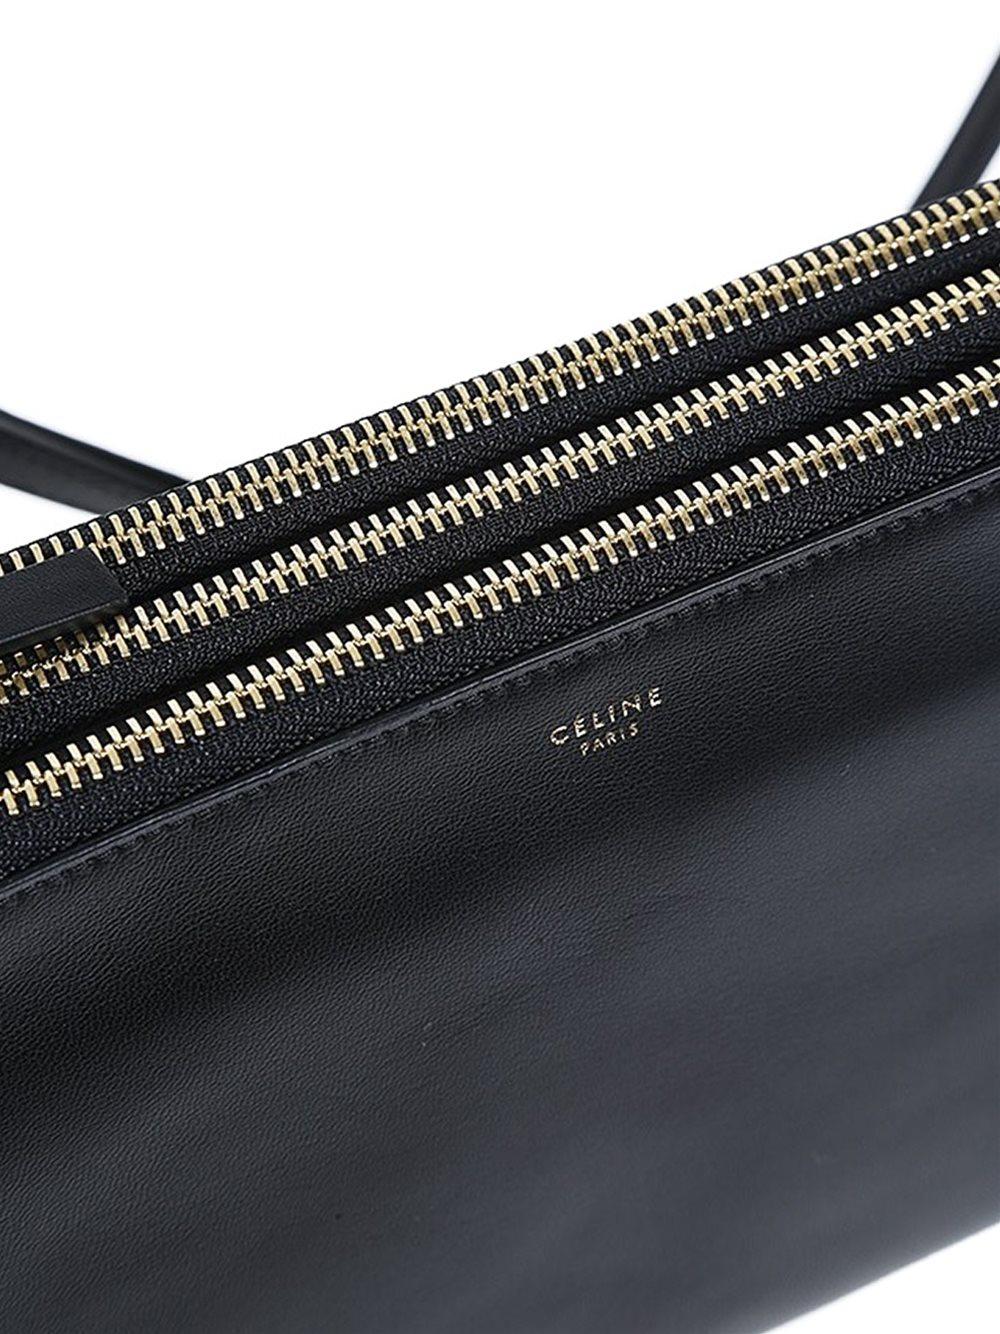 Celine 'trio' Shoulder Bag in Black